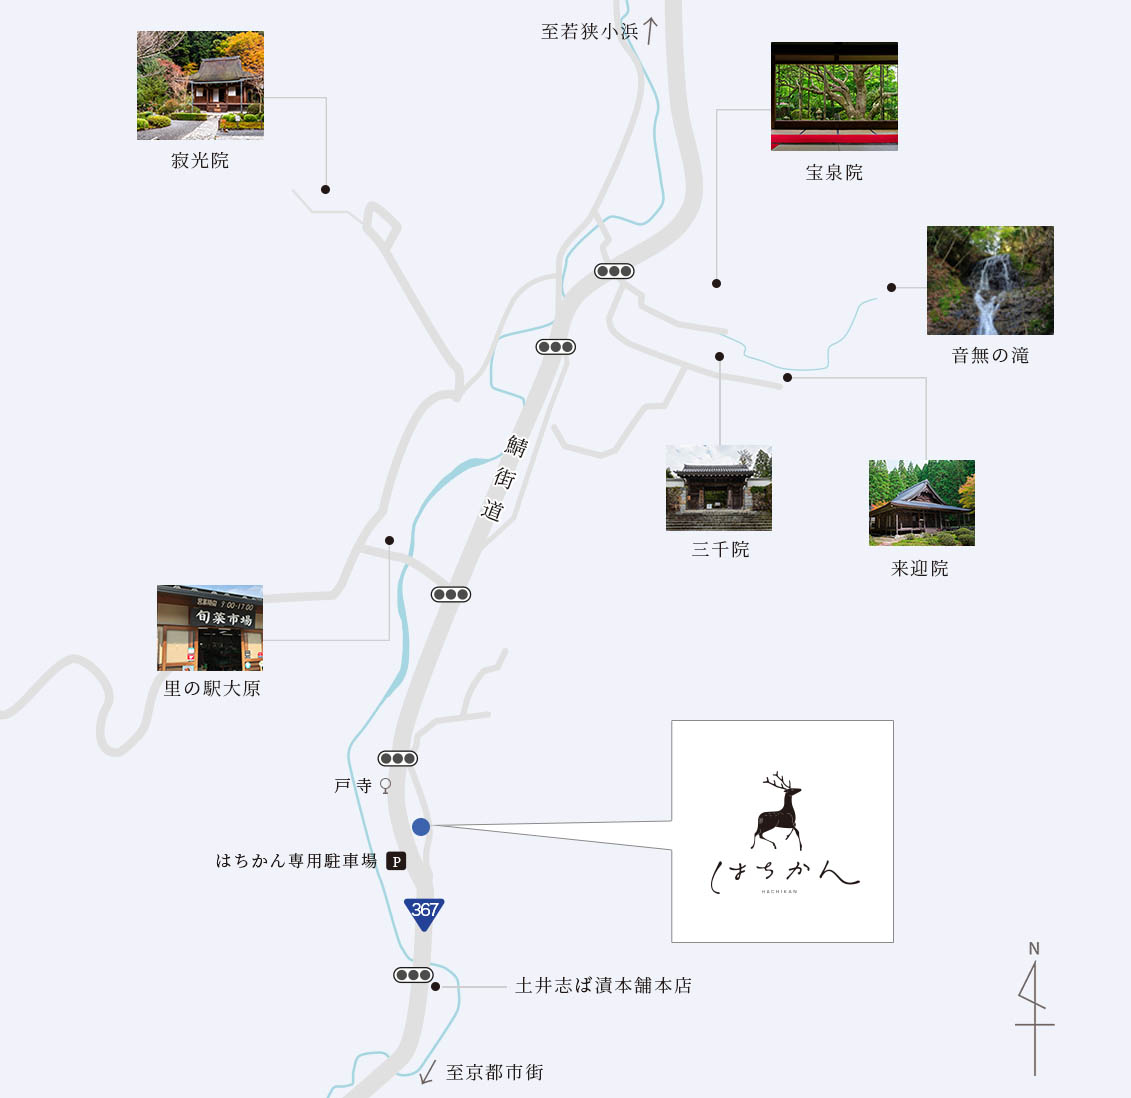 宿の周辺イメージマップ